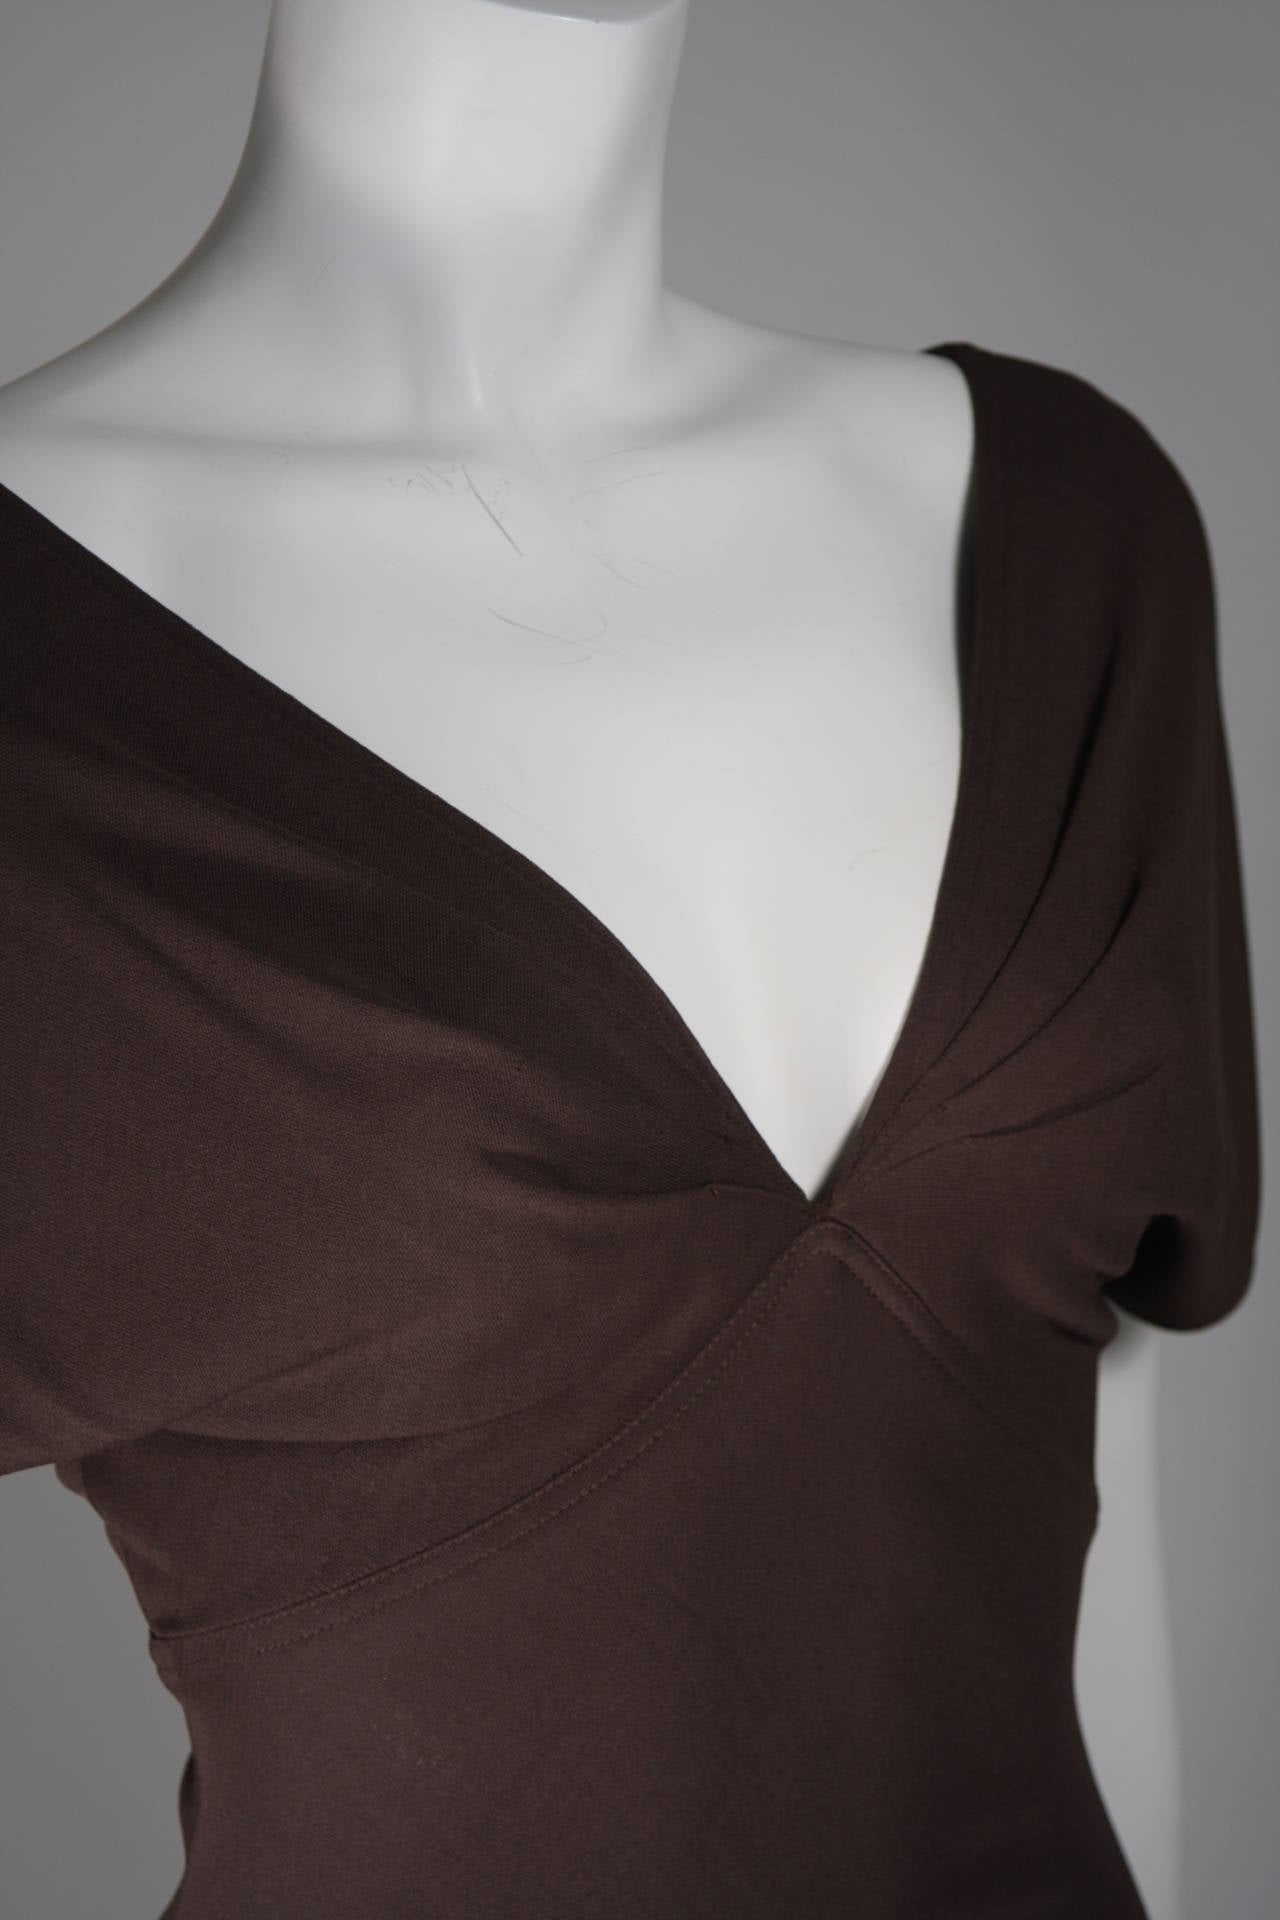 Women's Emanuel Ungaro 1990's Brown Jersey Gown Size 8